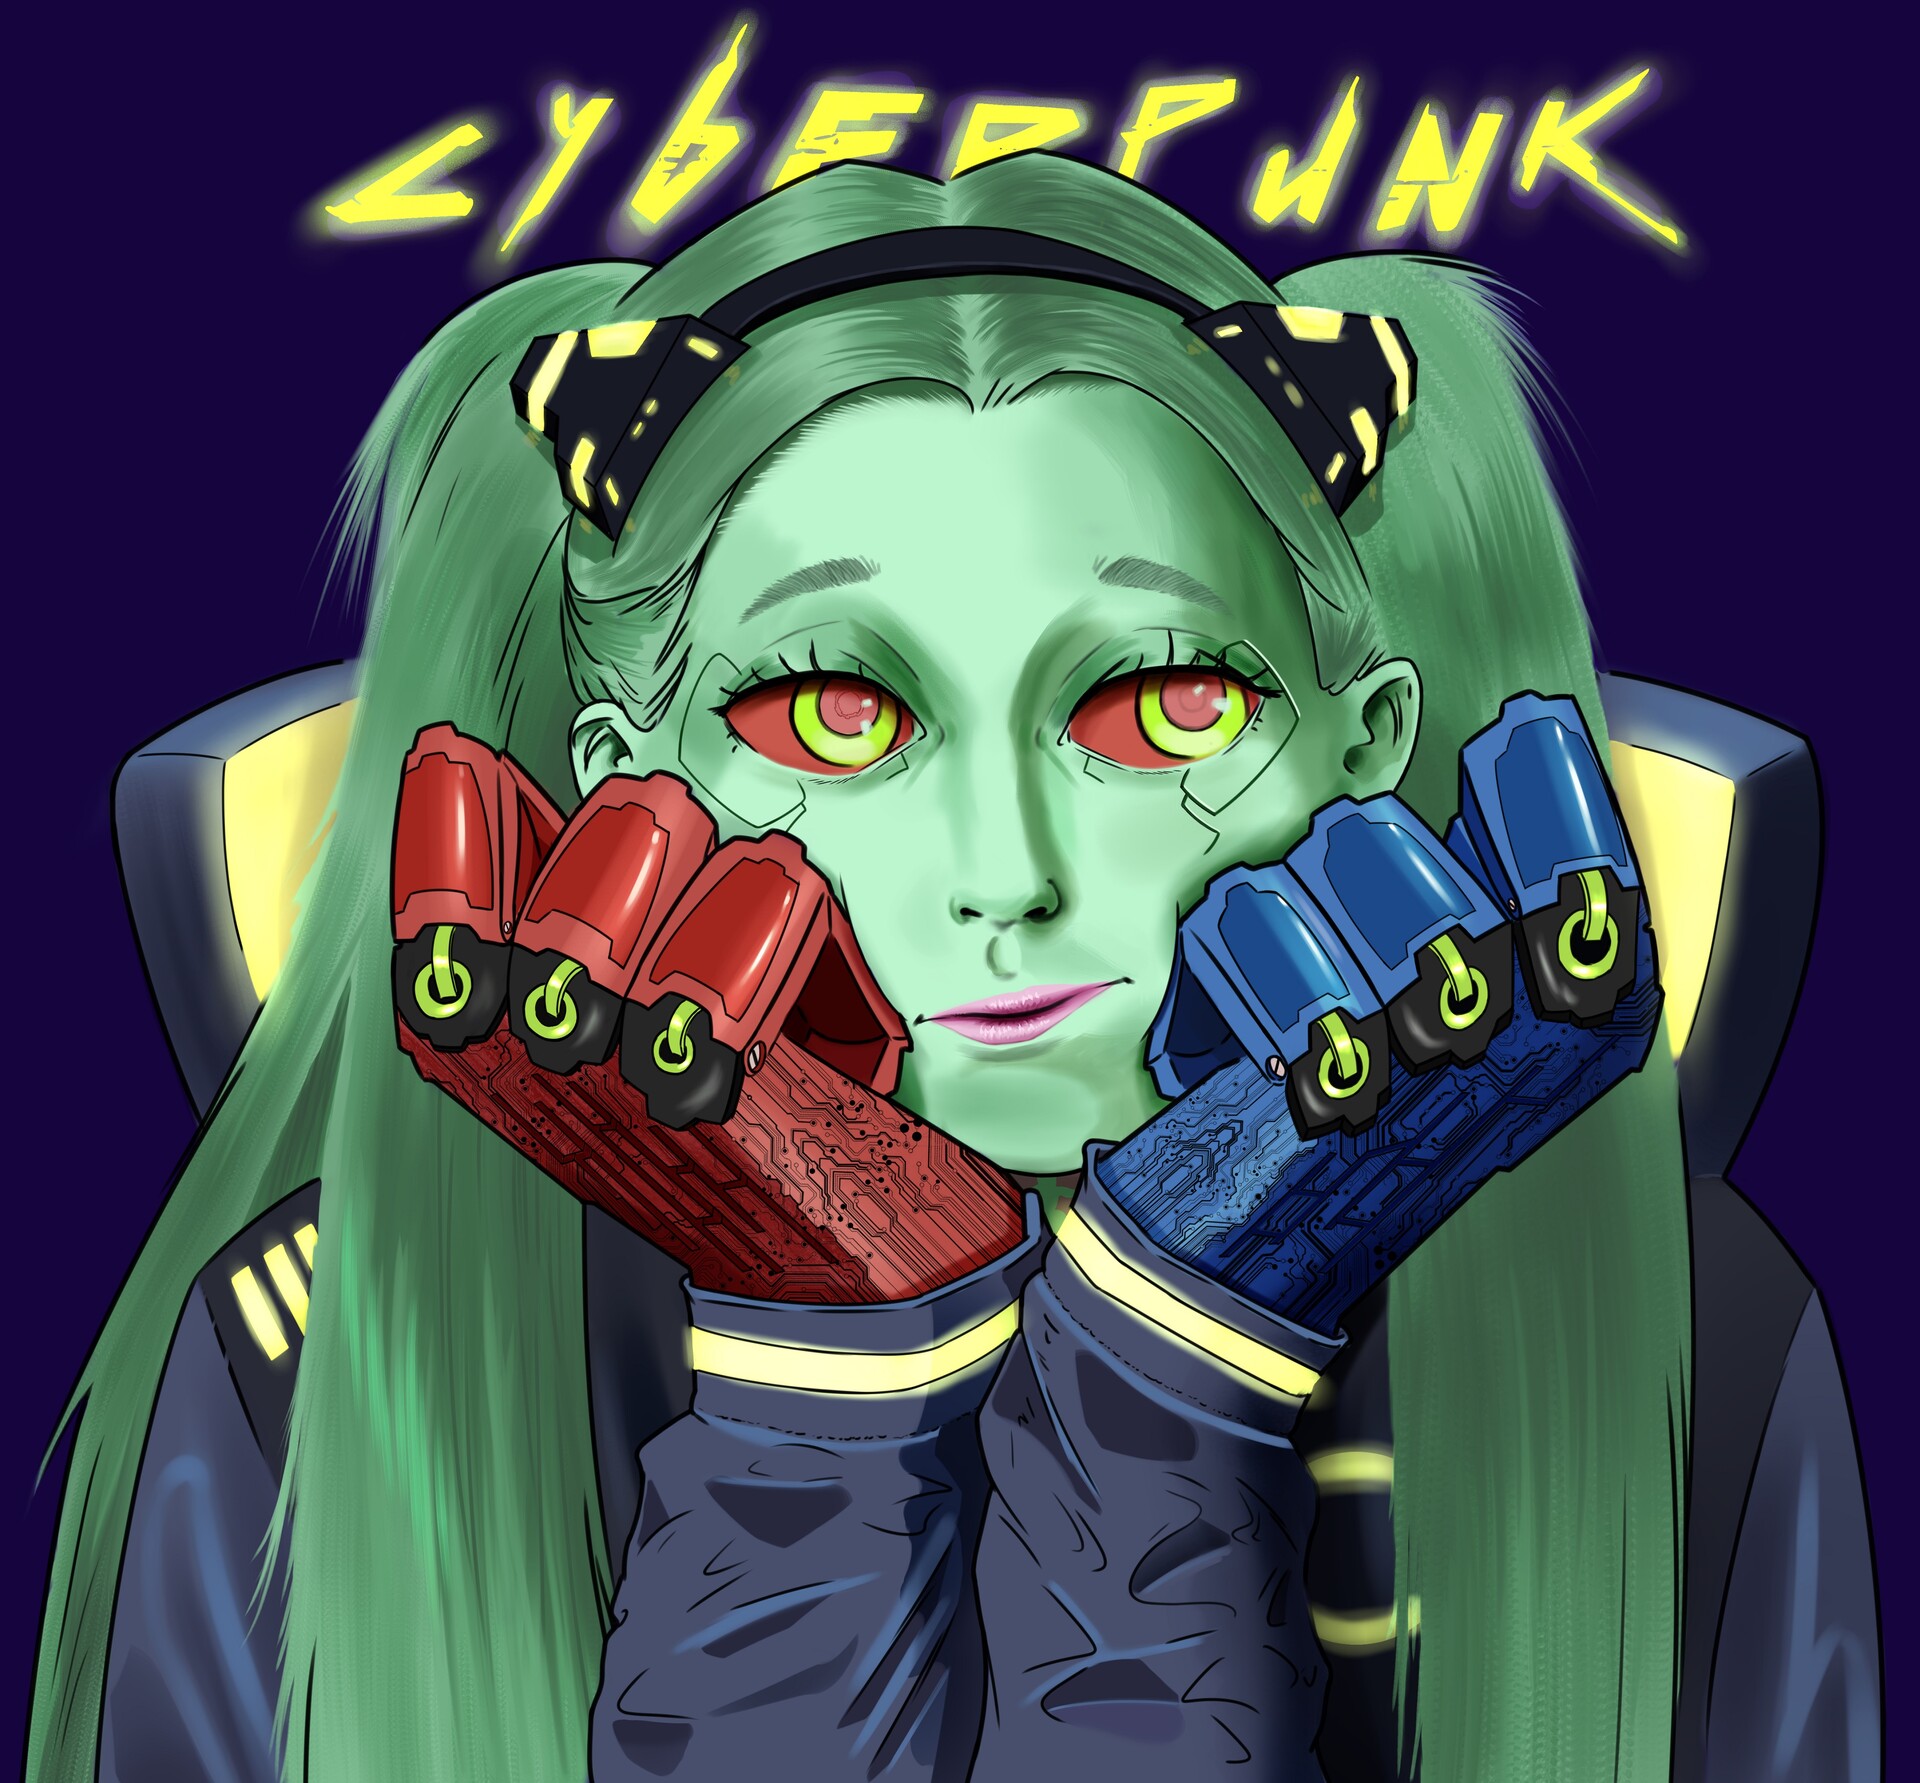 Who Is Rebecca In Cyberpunk Edgerunners?